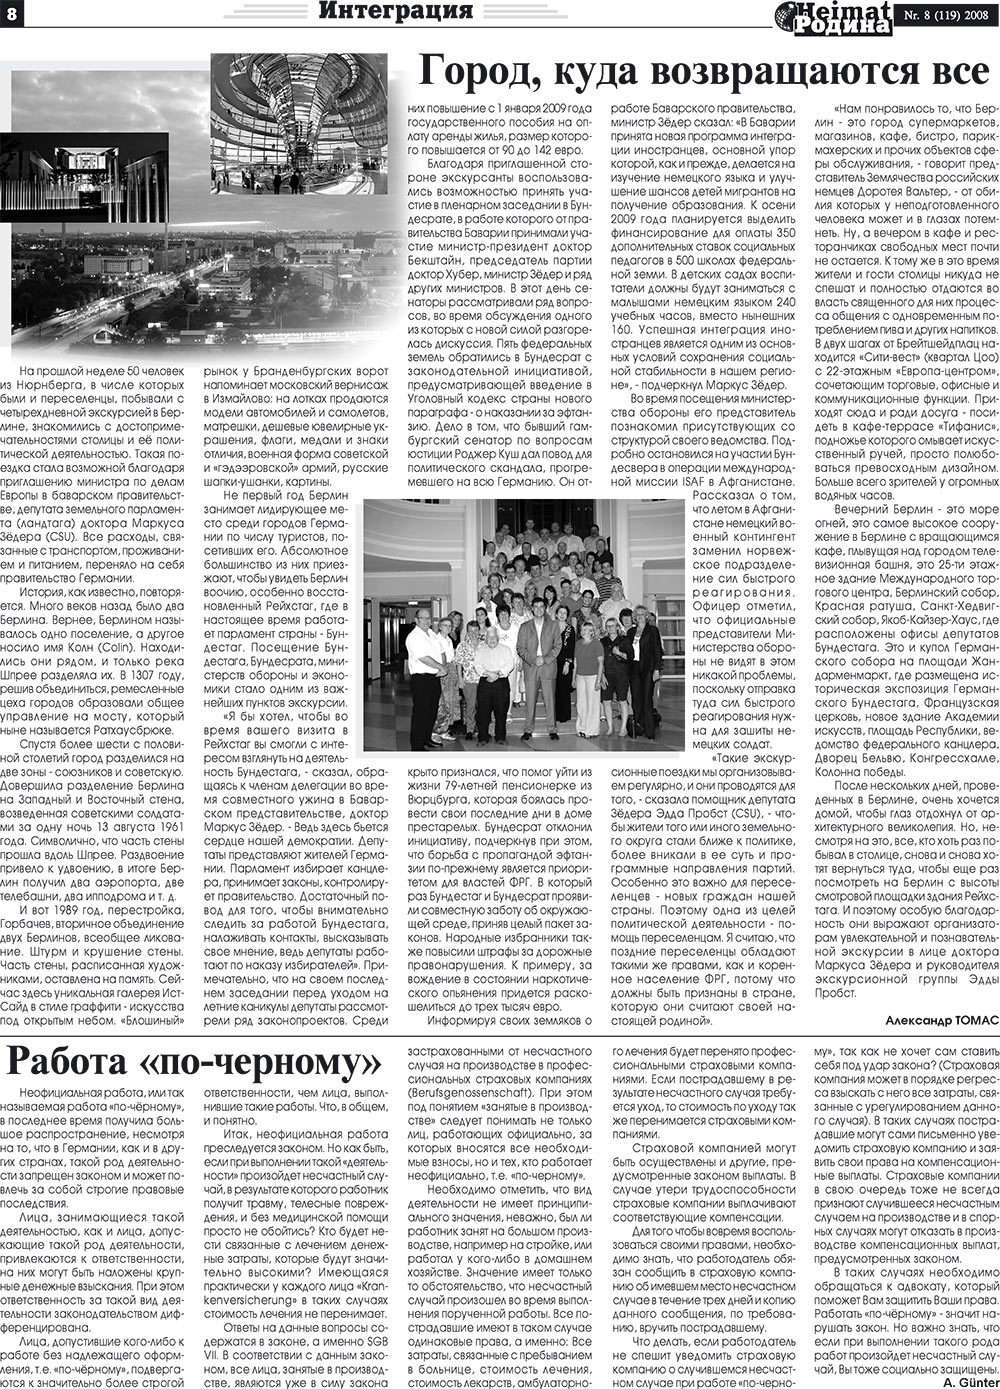 Heimat-Родина (газета). 2008 год, номер 8, стр. 8